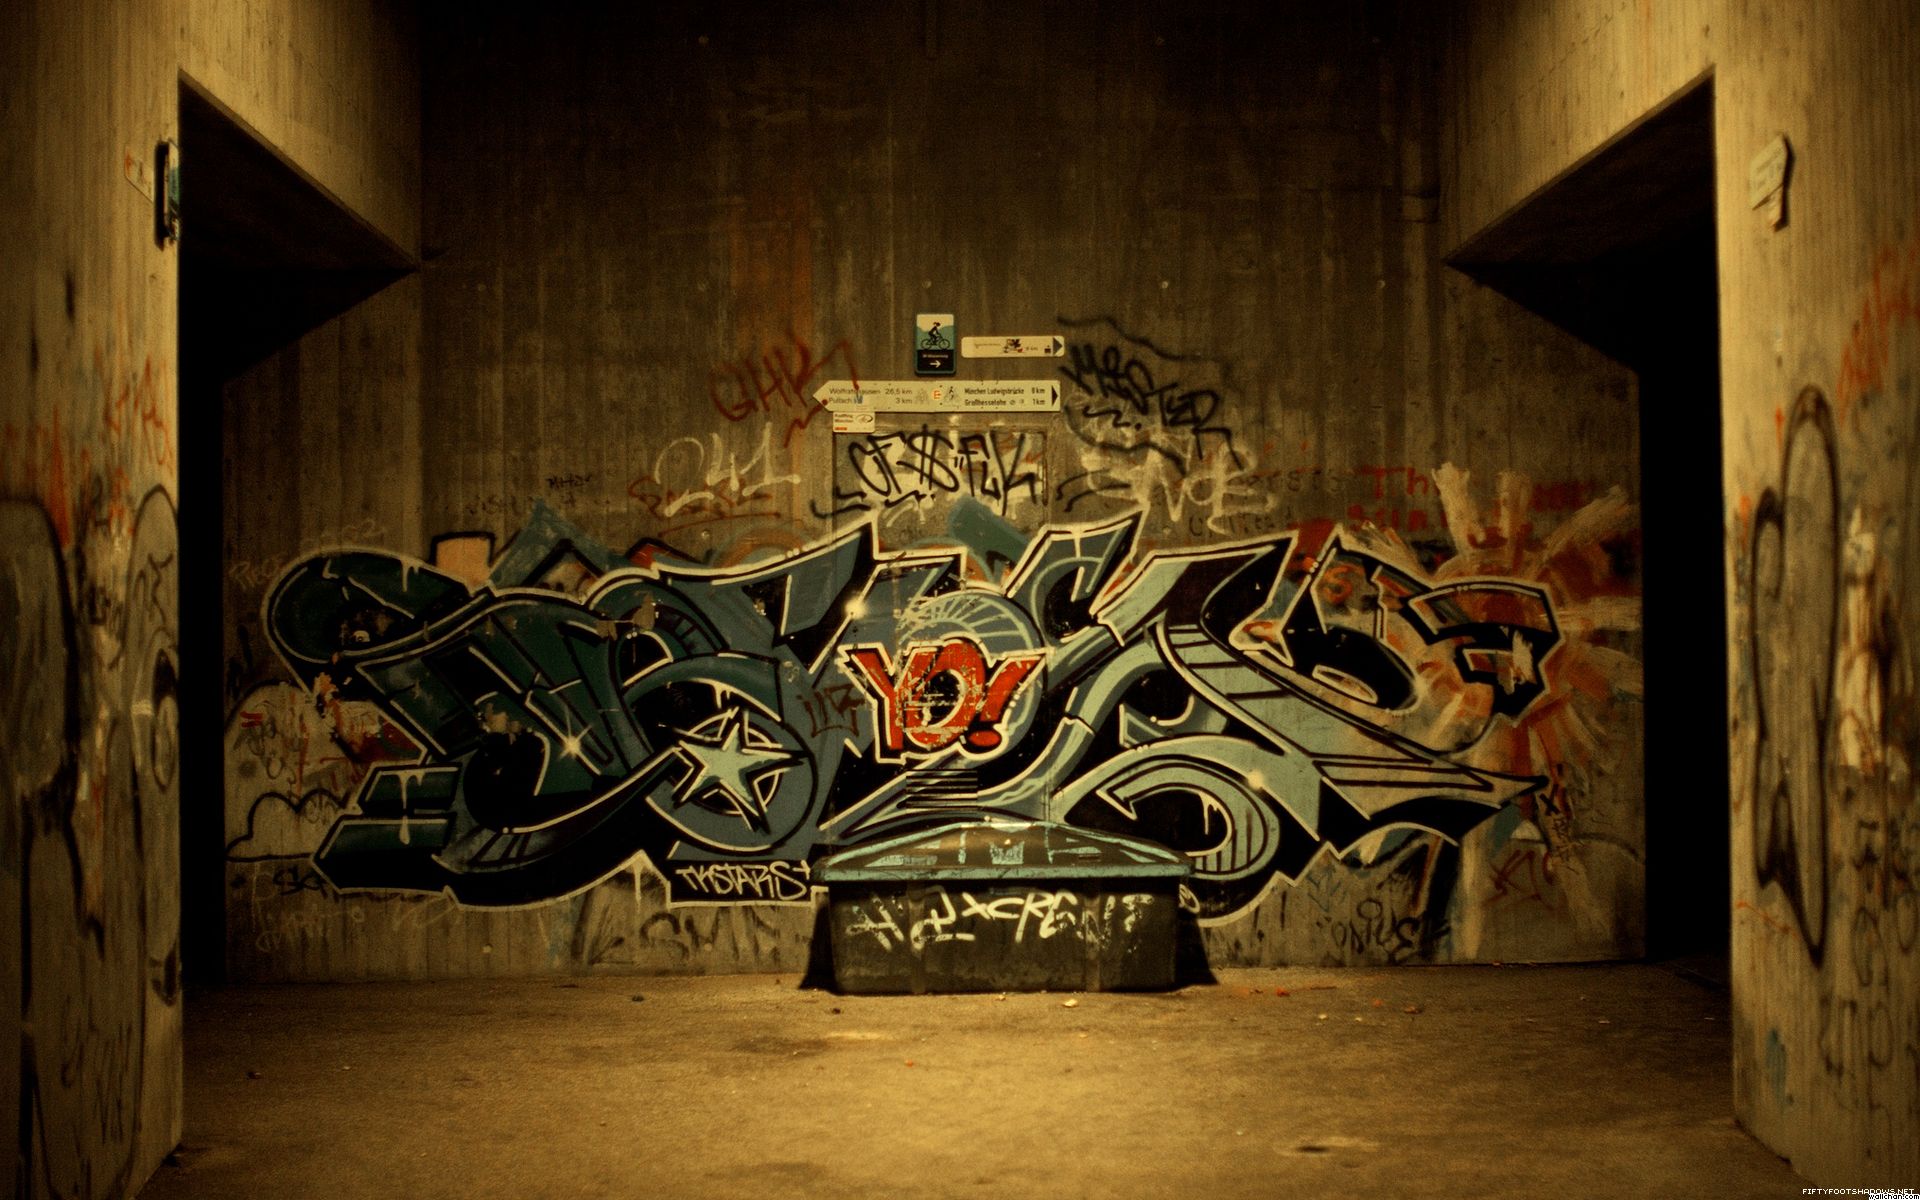 hop graffiti free unique desktop wallpaper download hip hop graffiti